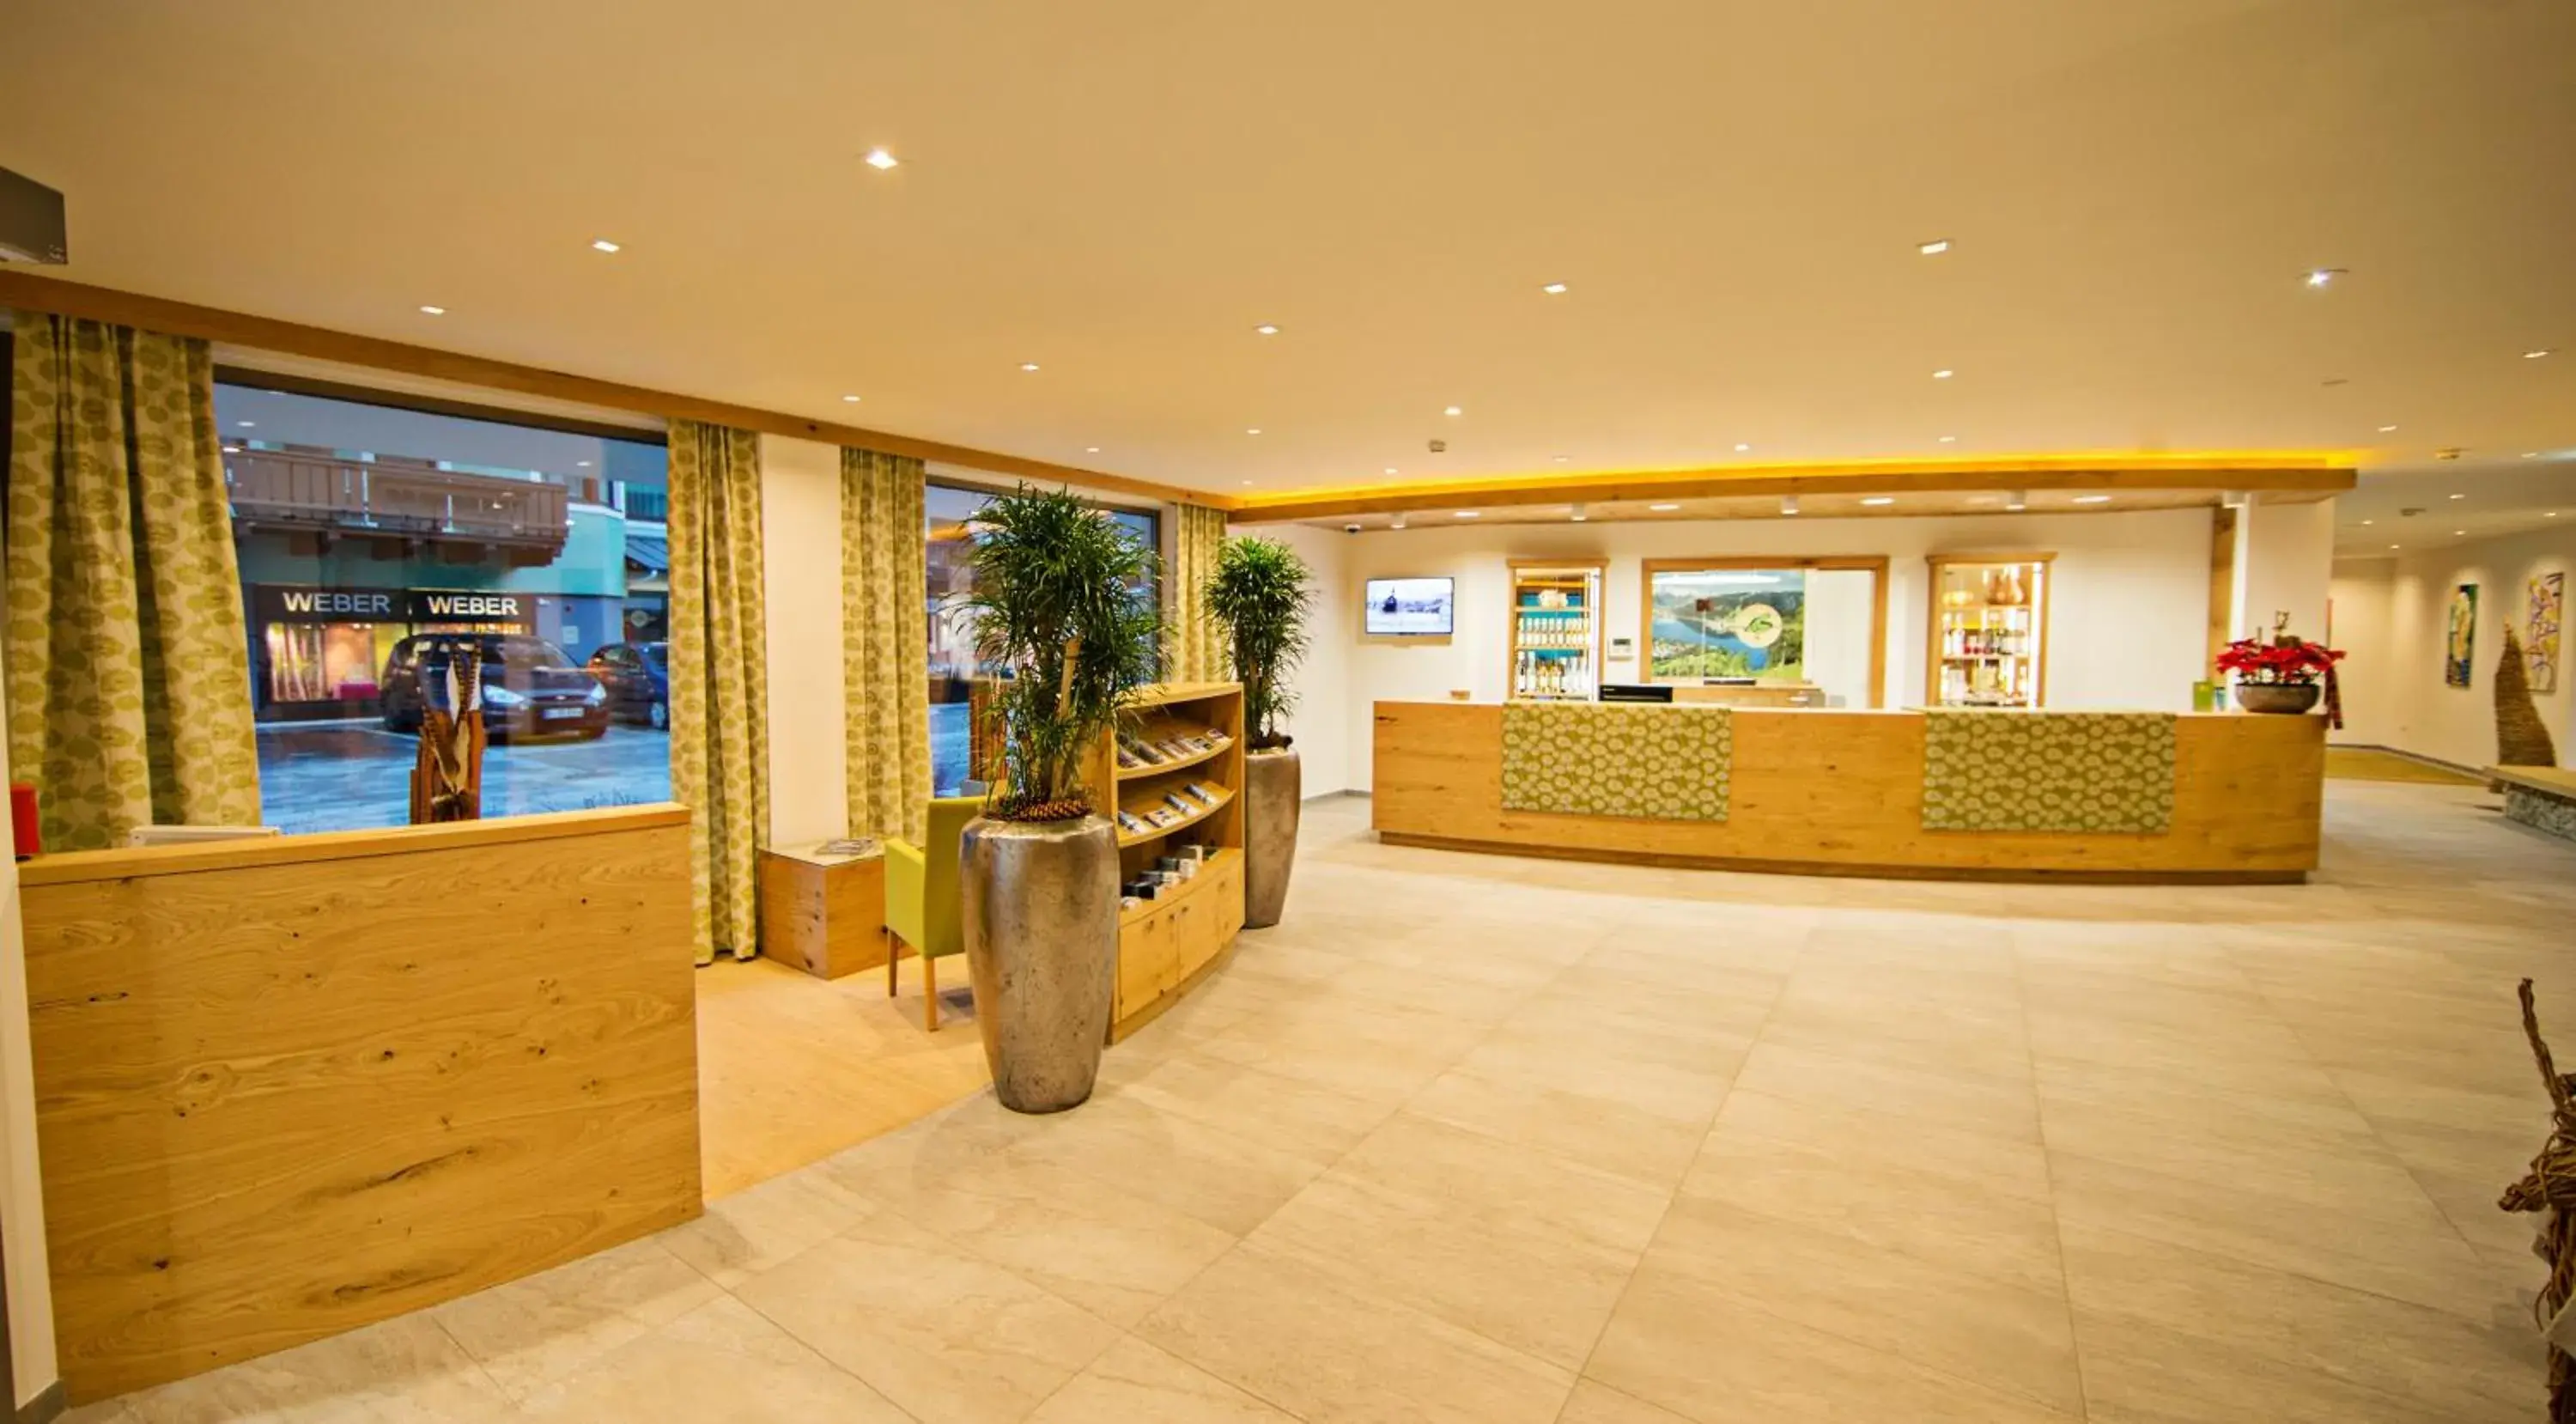 Lobby or reception, Lobby/Reception in Hotel Grüner Baum